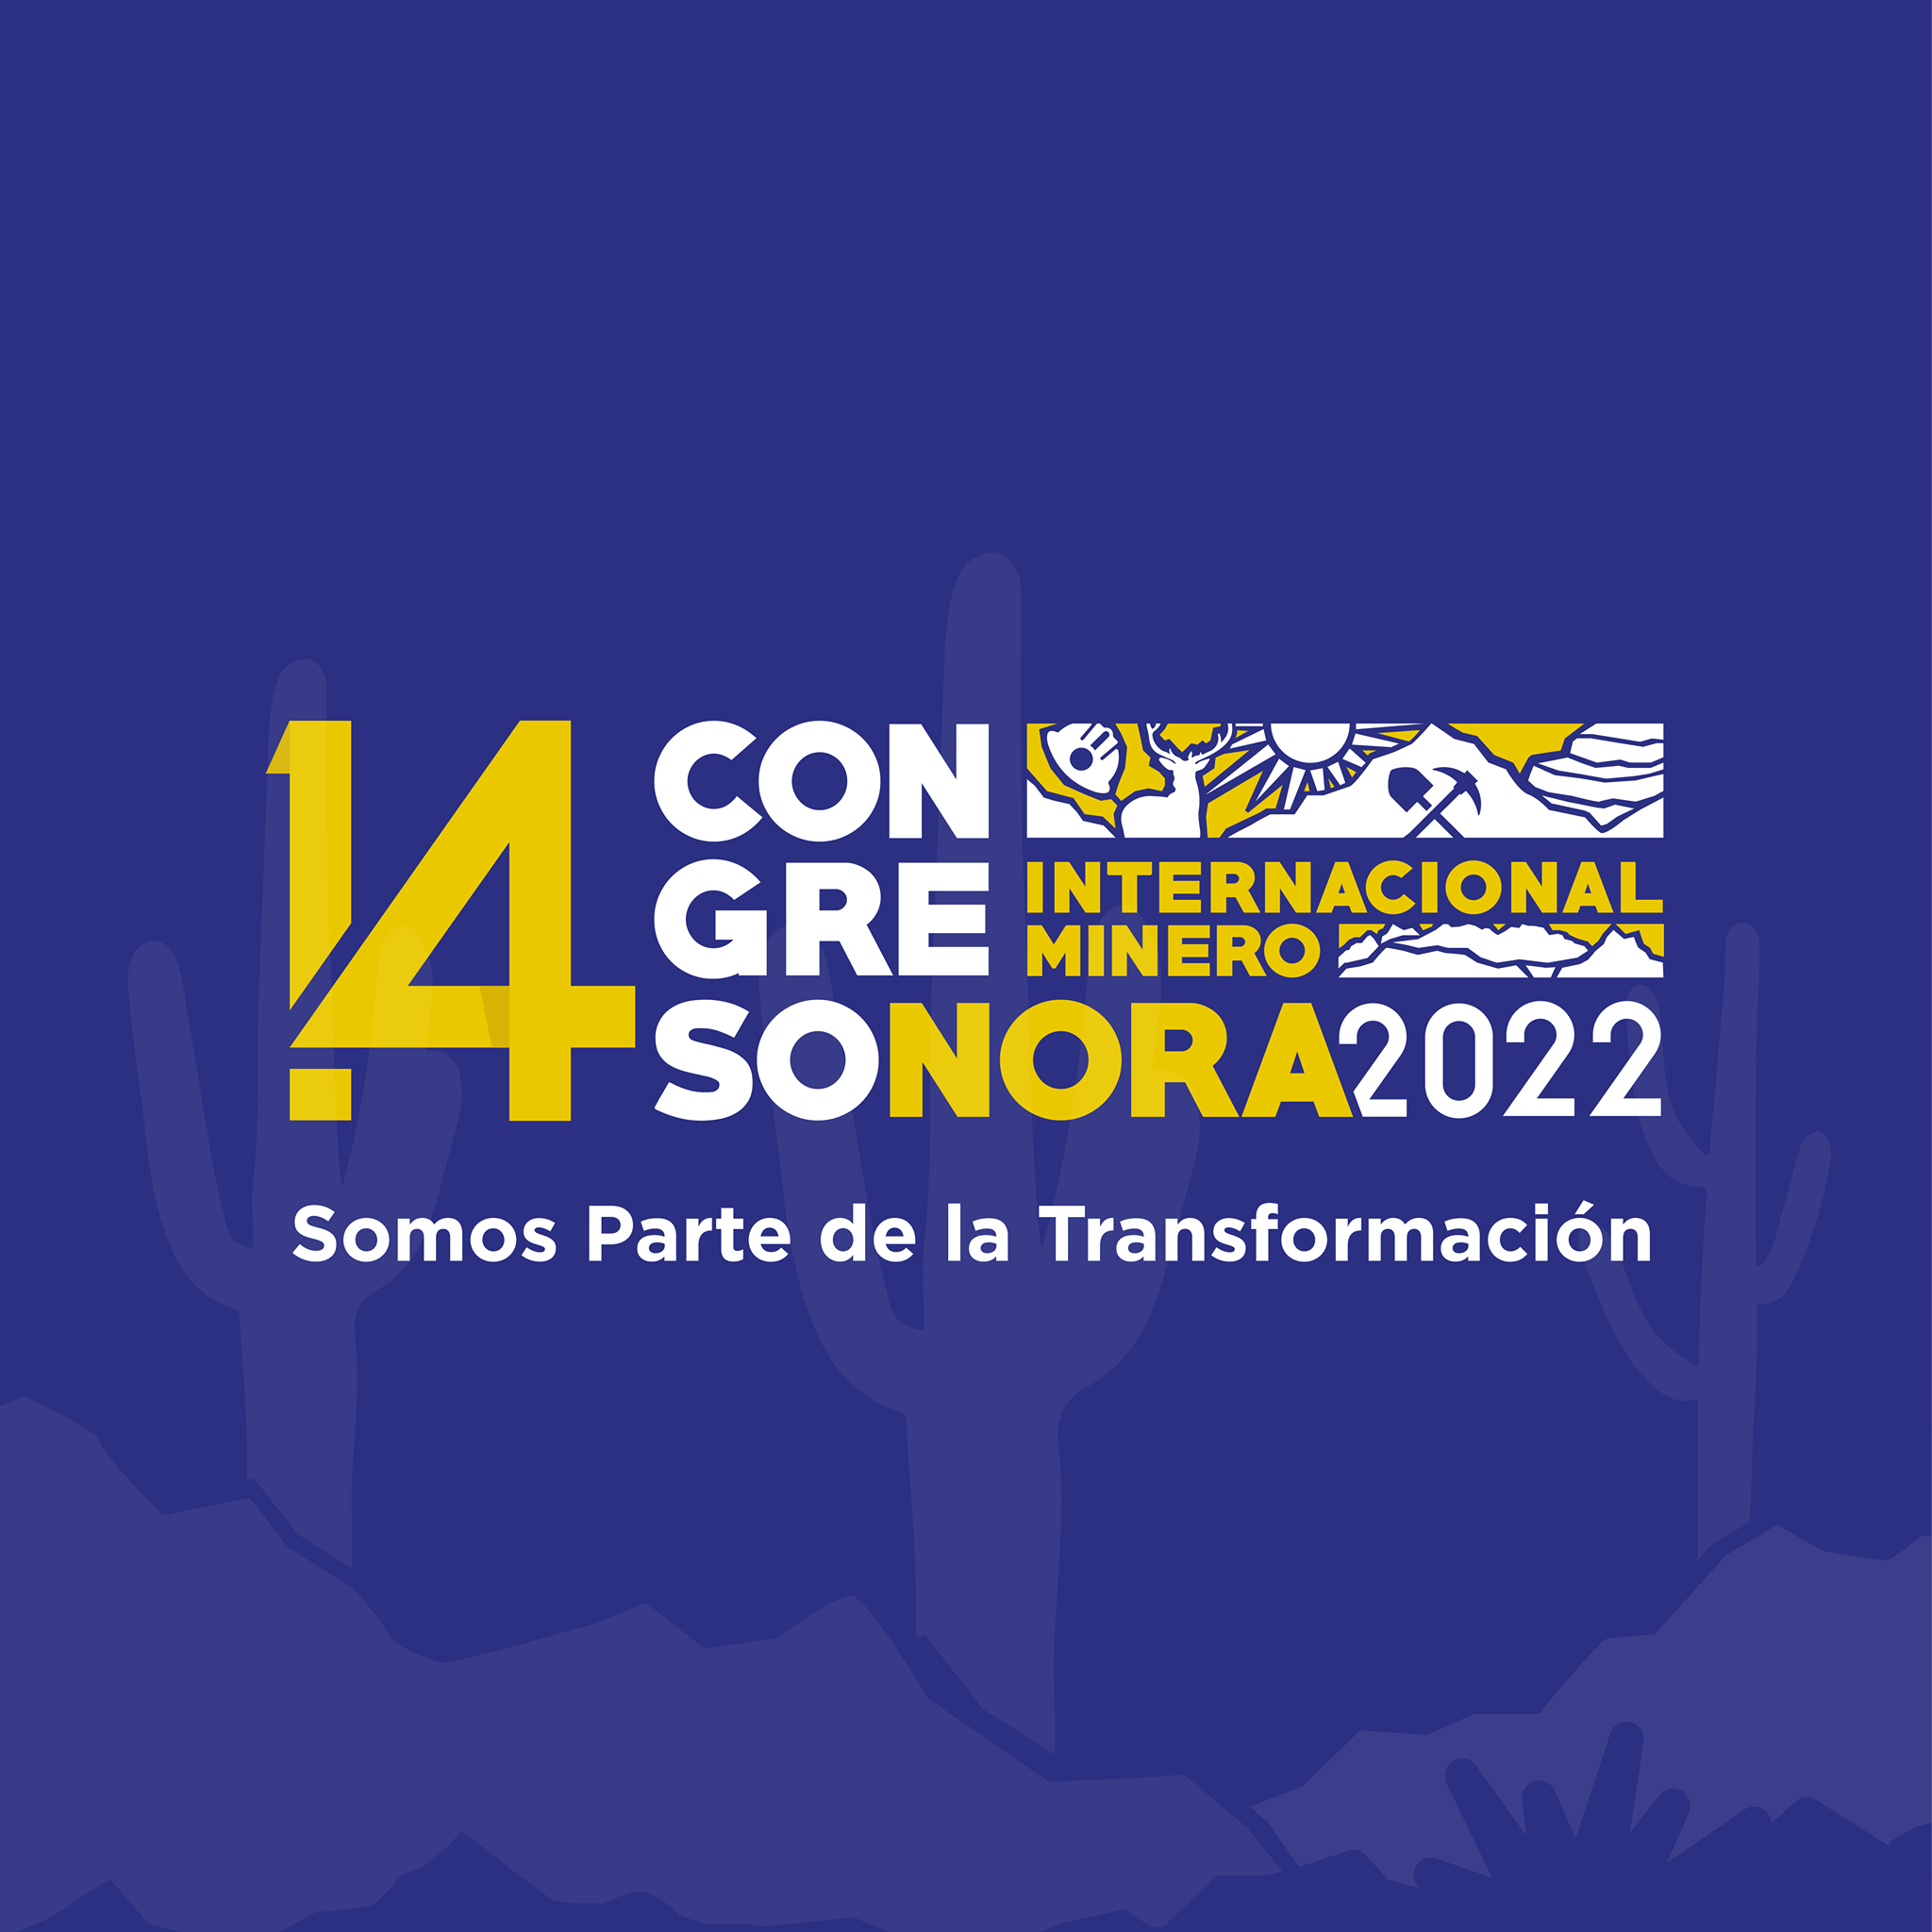 14 Congreso Internacional Minero Sonora 2022